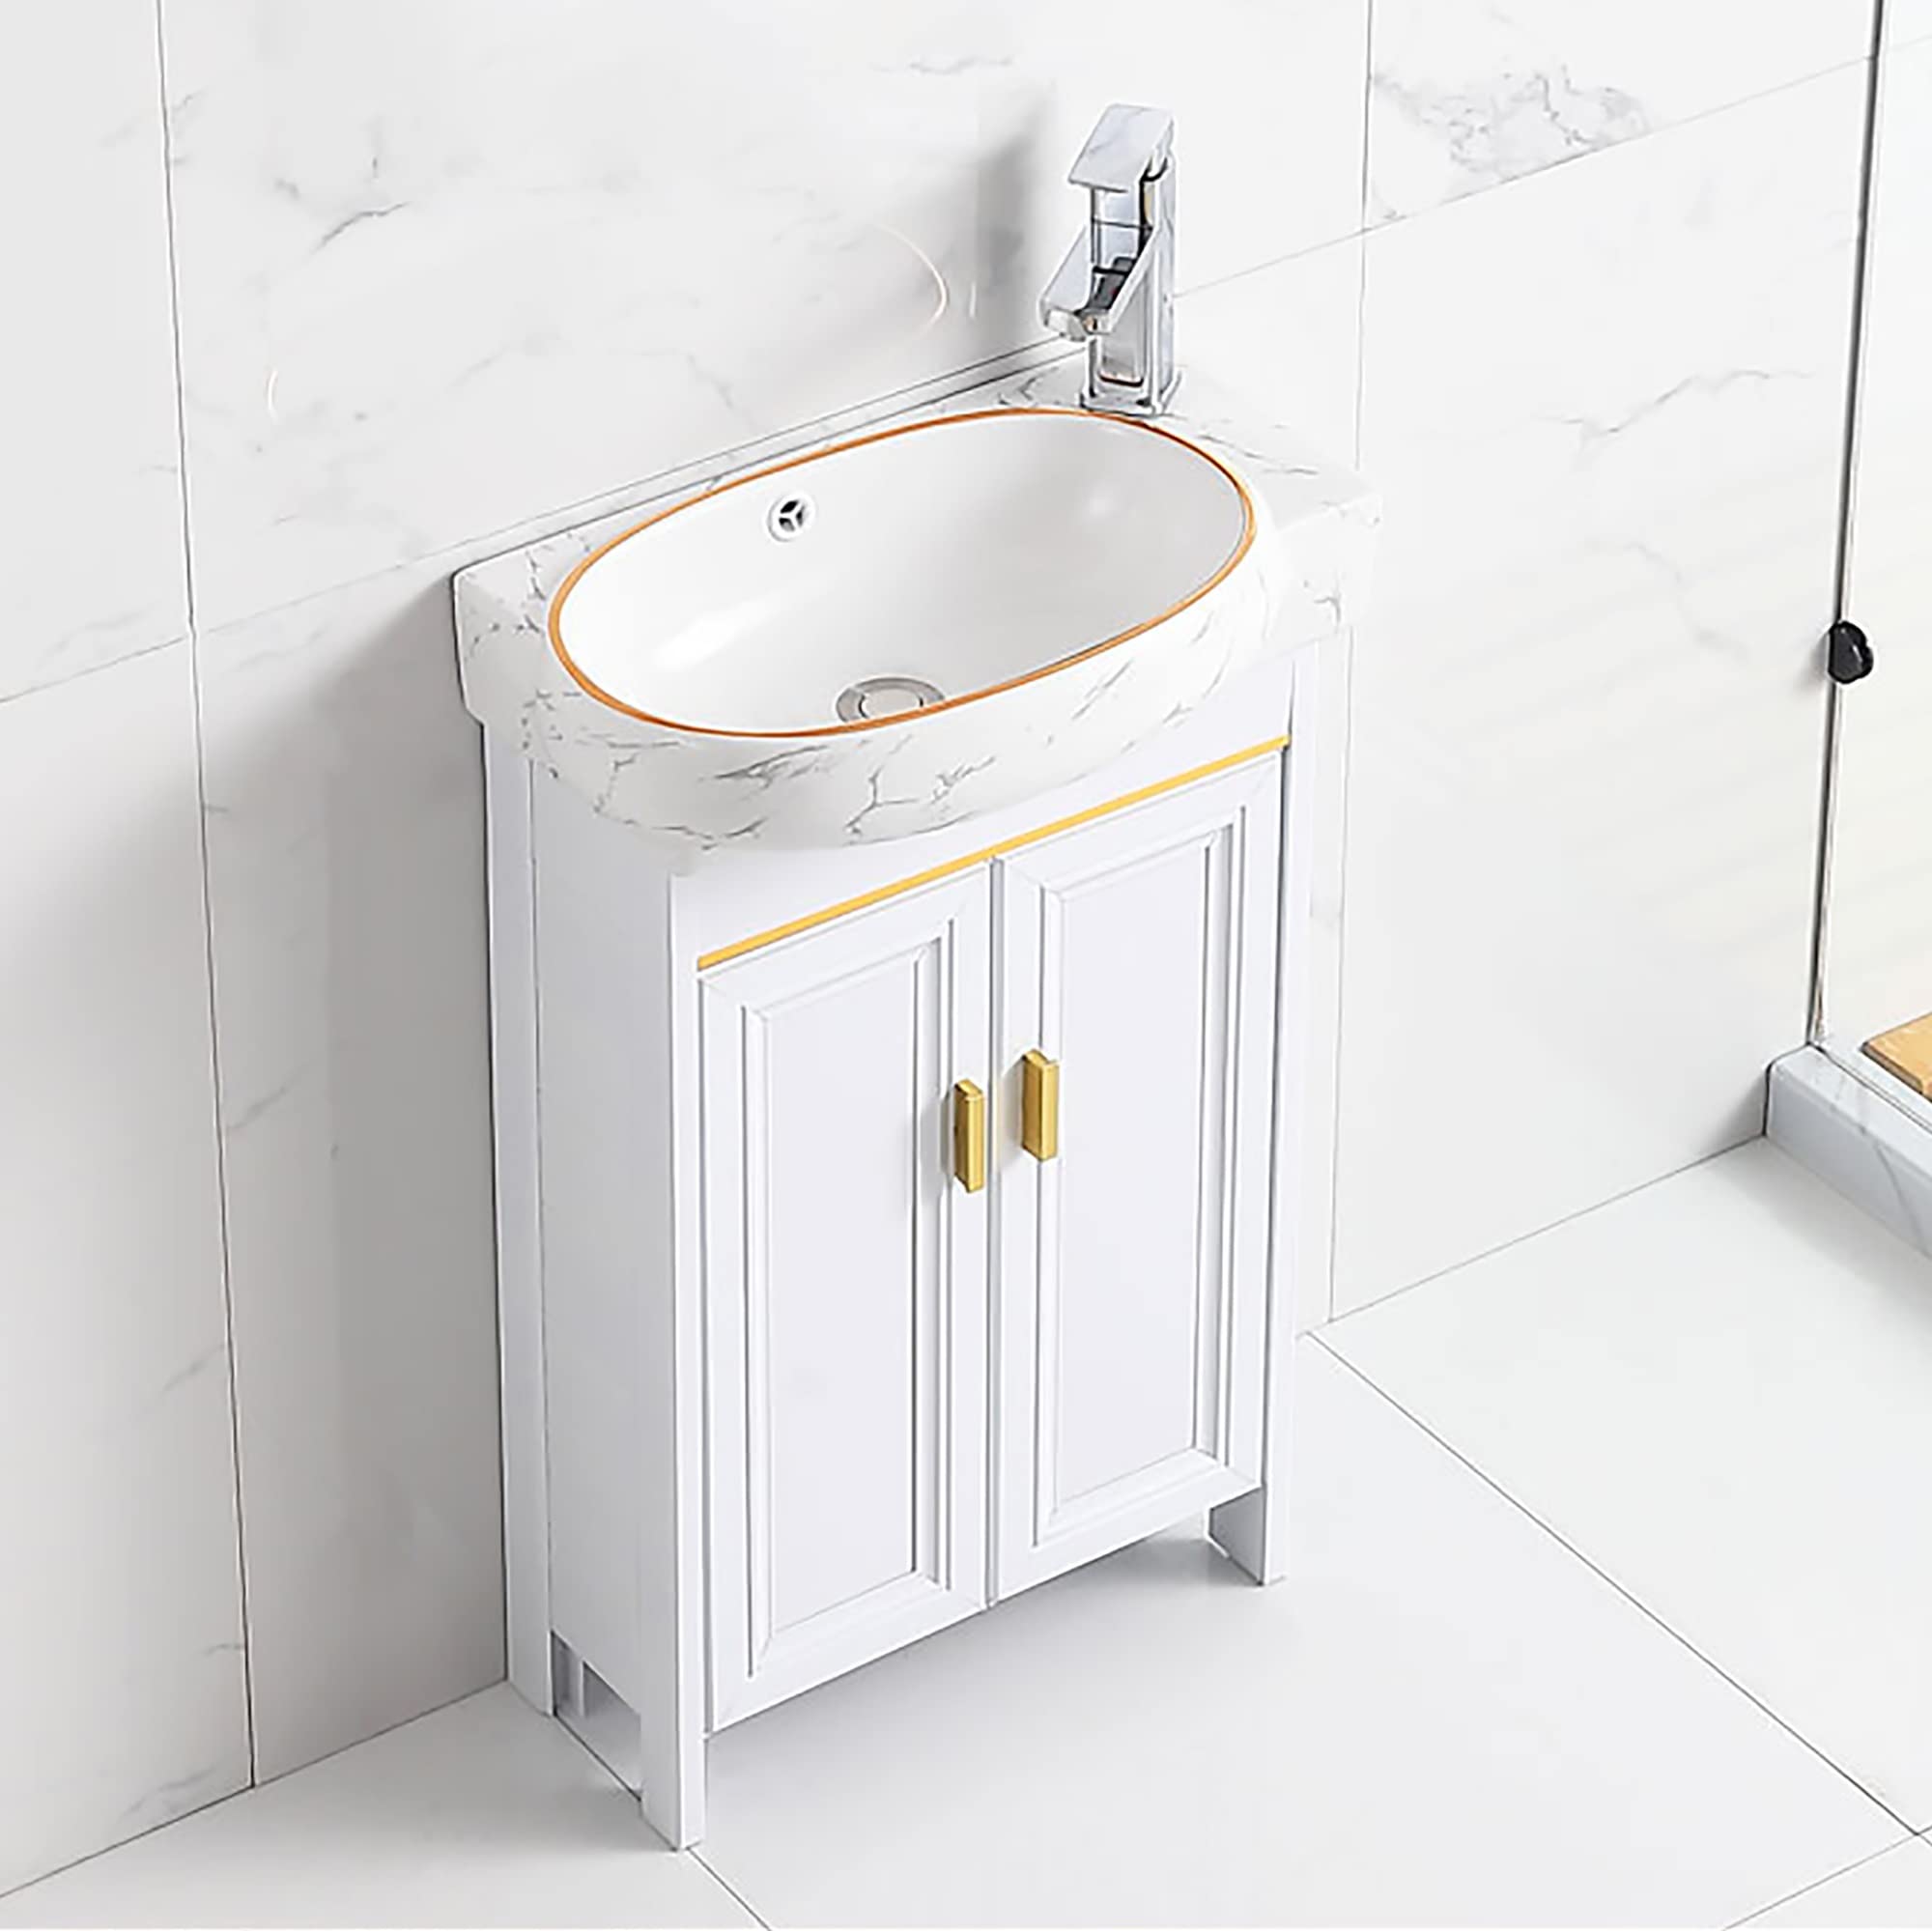 slim toilet and sink vanity unit Narrow depth bathroom vanity with sink : 30" narrow depth taren bamboo